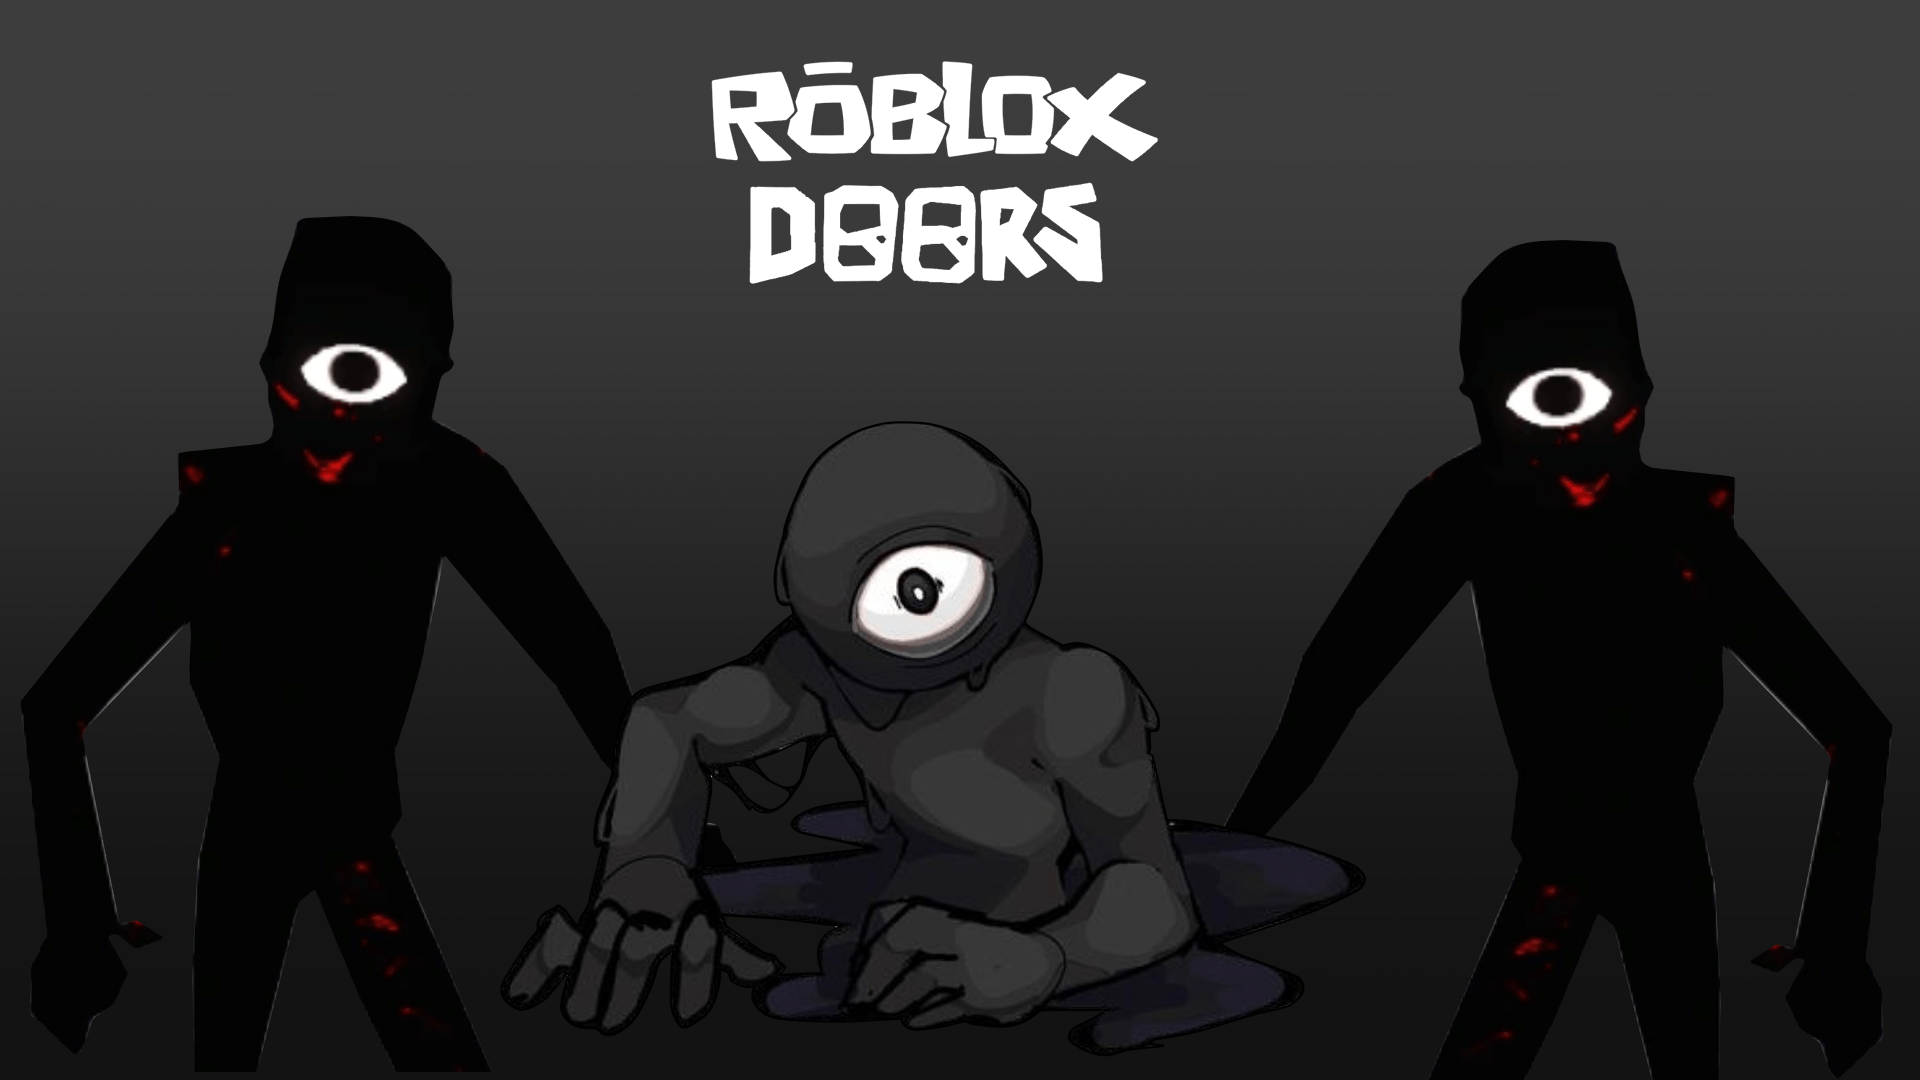 myfirstshuffle #doors #roblox #Robloxdoors#seek